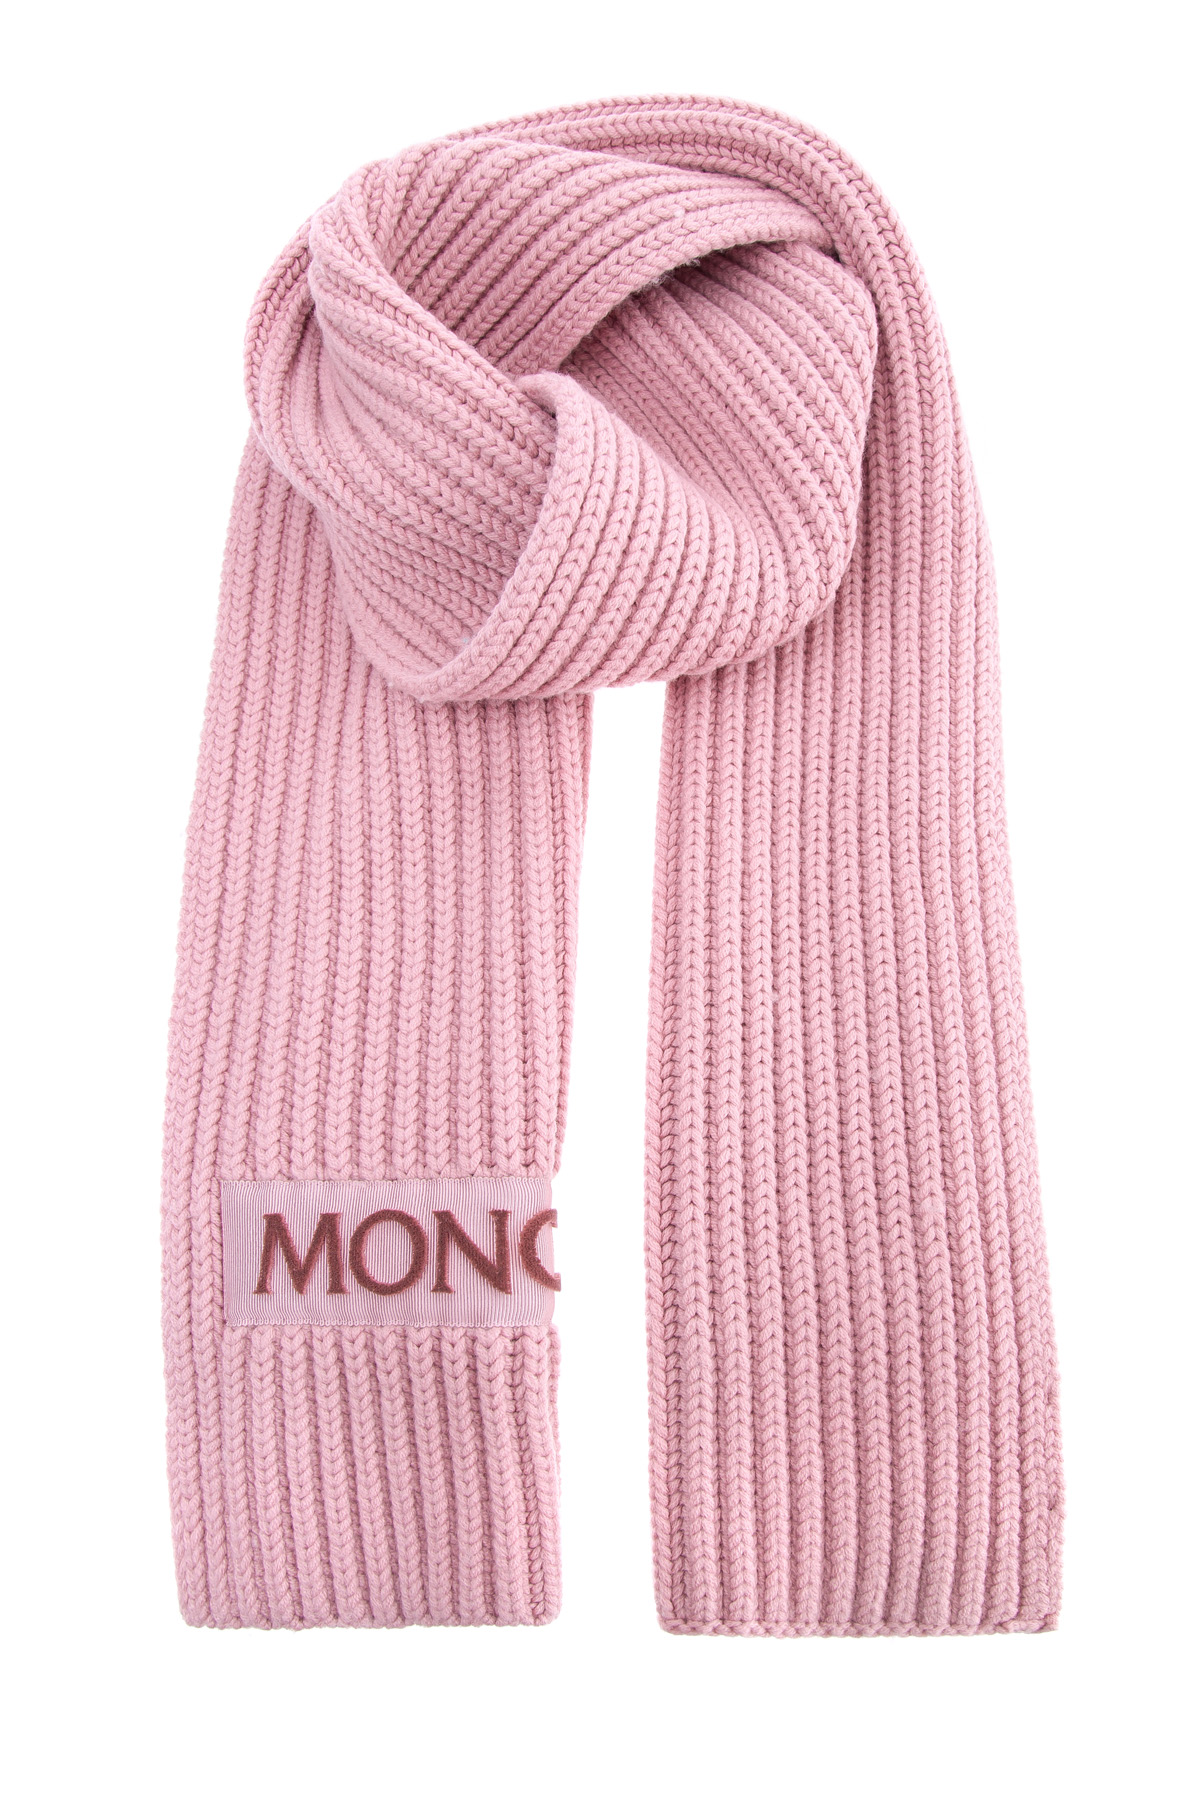 Шарф из шерсти в технике английской резинки с символикой бренда MONCLER, цвет розовый, размер 42;42.5;43.5 - фото 1